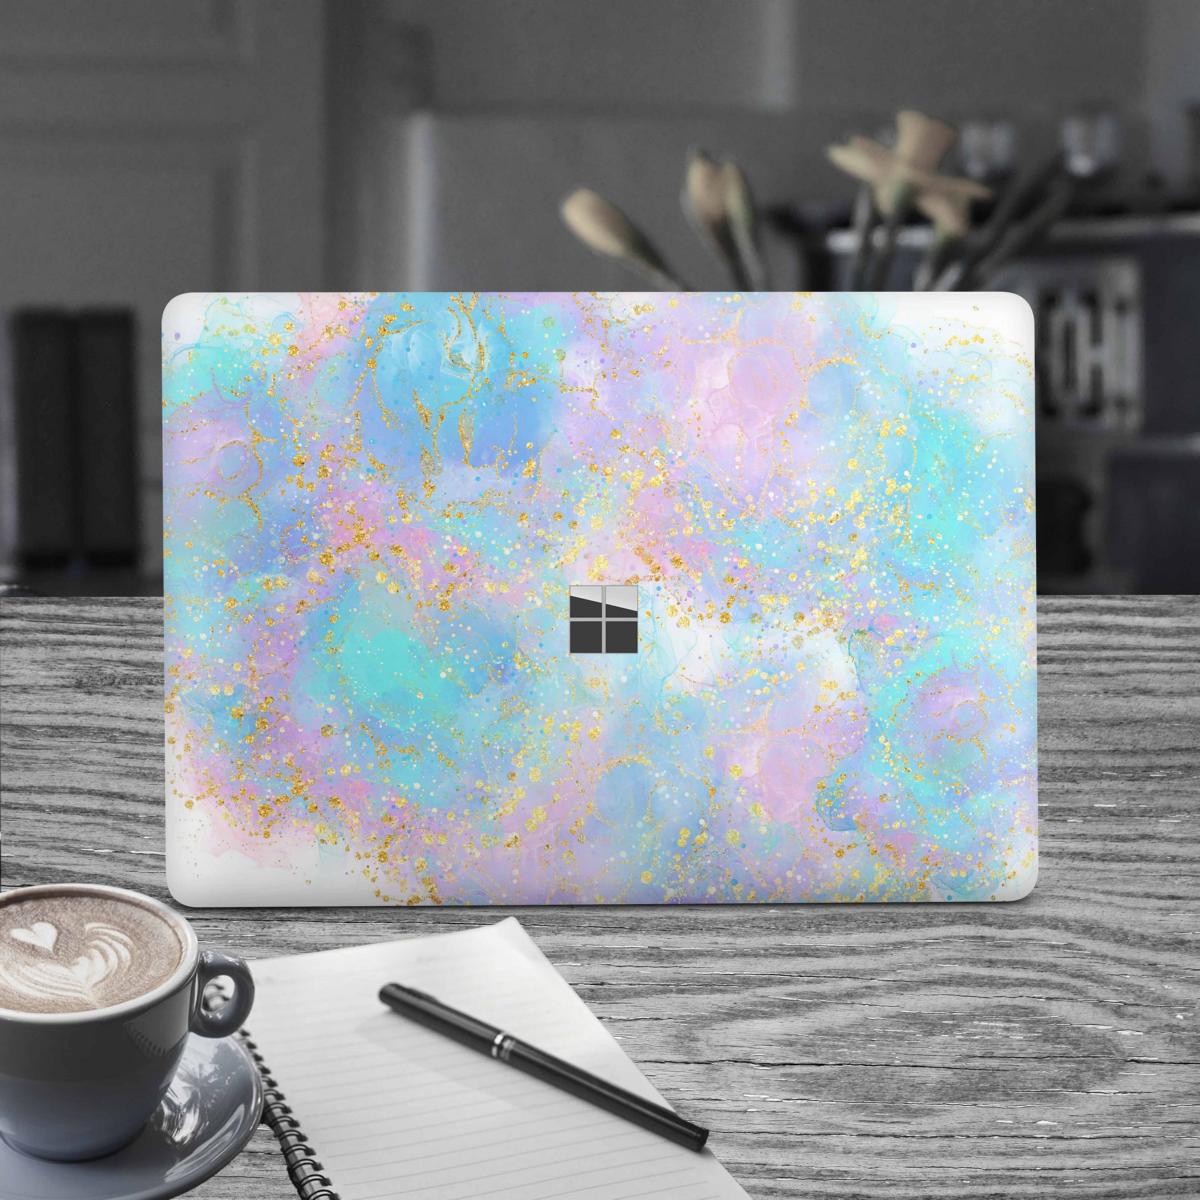 Microsoft Surface Laptop Studio Premium Vinylfolie Kratzerschutz Design Pink blue Glitter Elektronik-Sticker & -Aufkleber Skins4u   